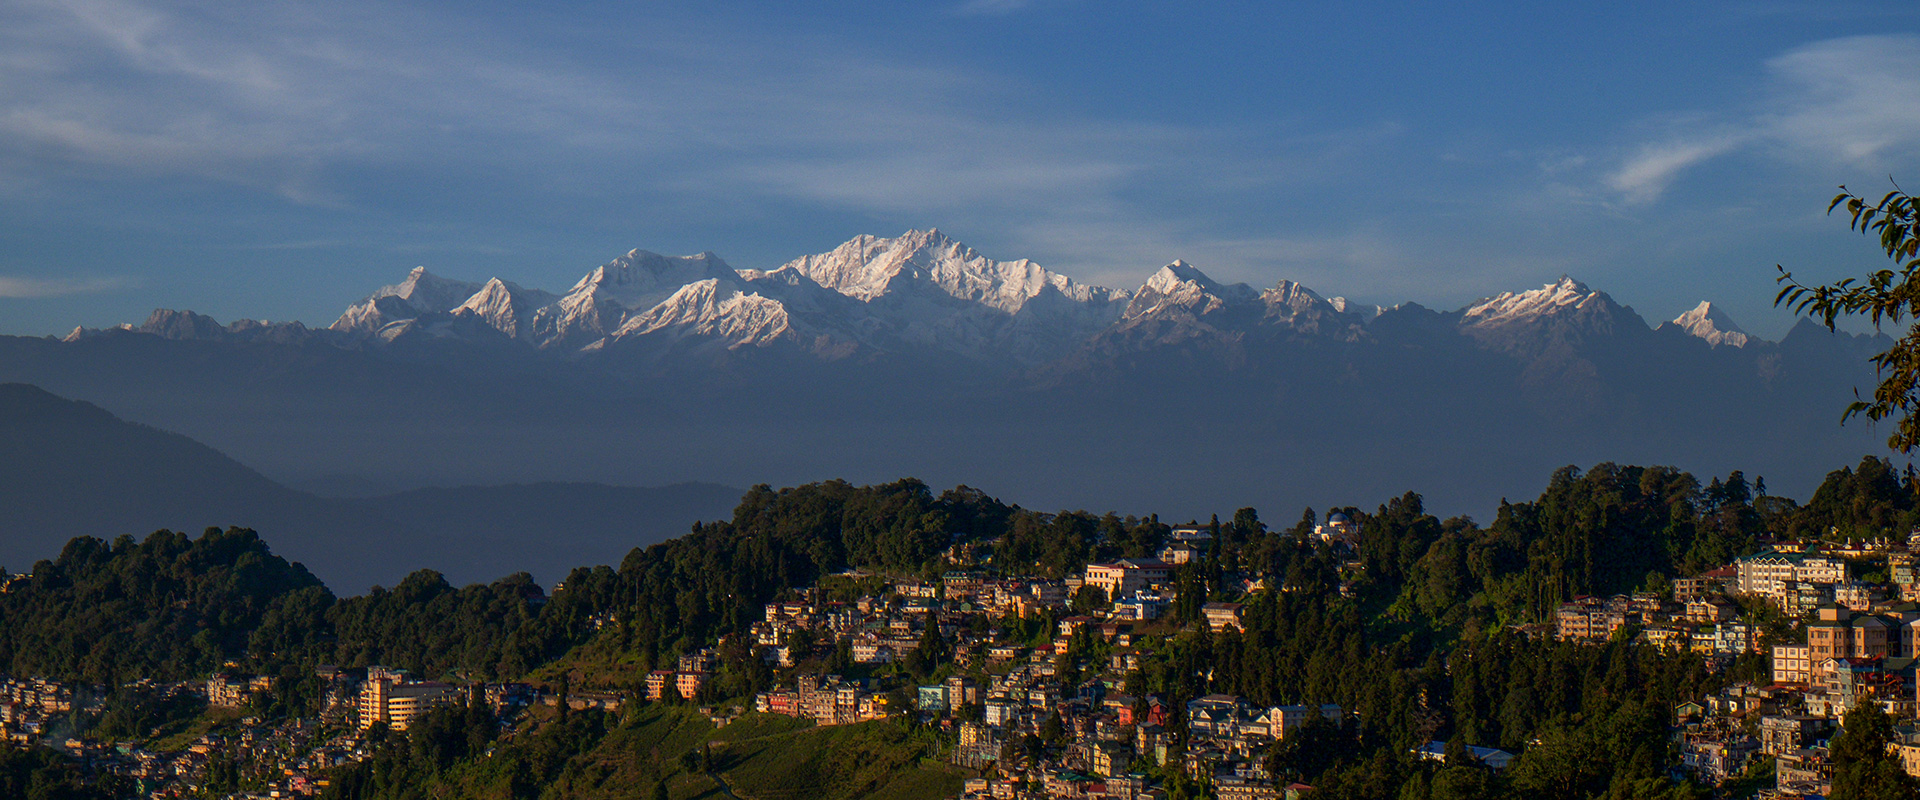 Crescent Resort, Darjeeling